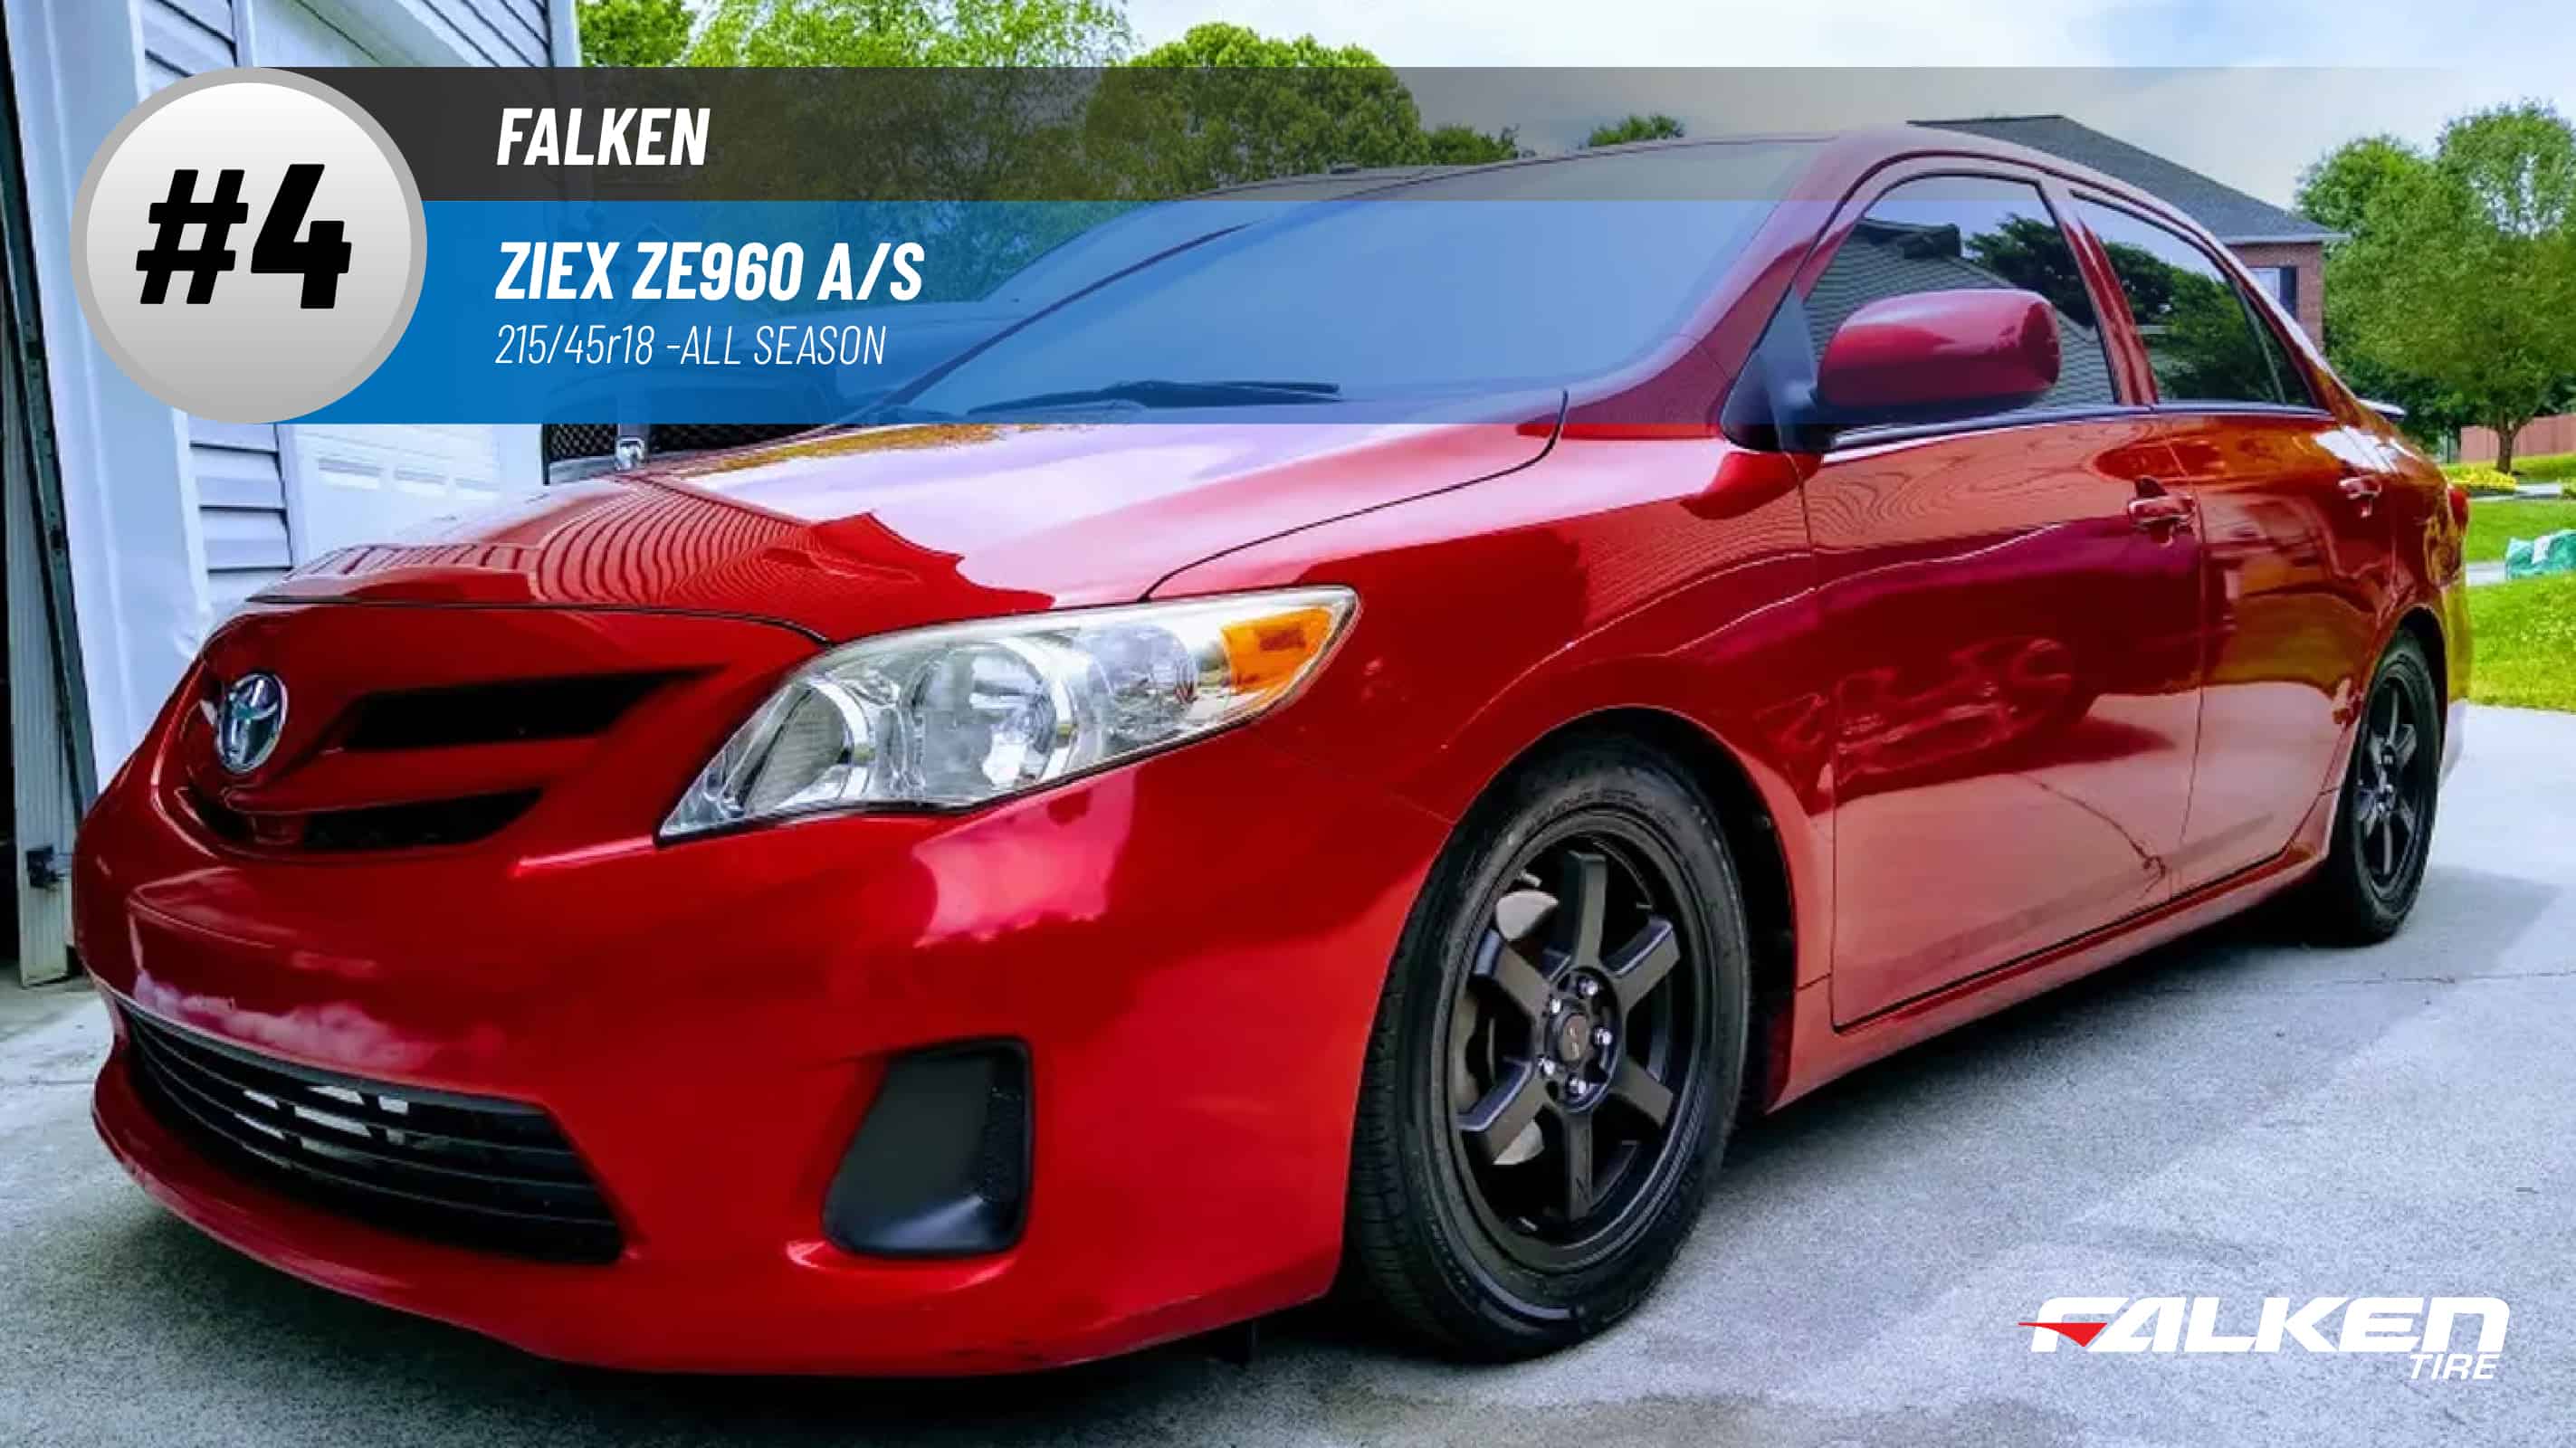 Top #4 All Season Tires: Falken Ziex ZE960 A/S – 215/45r18